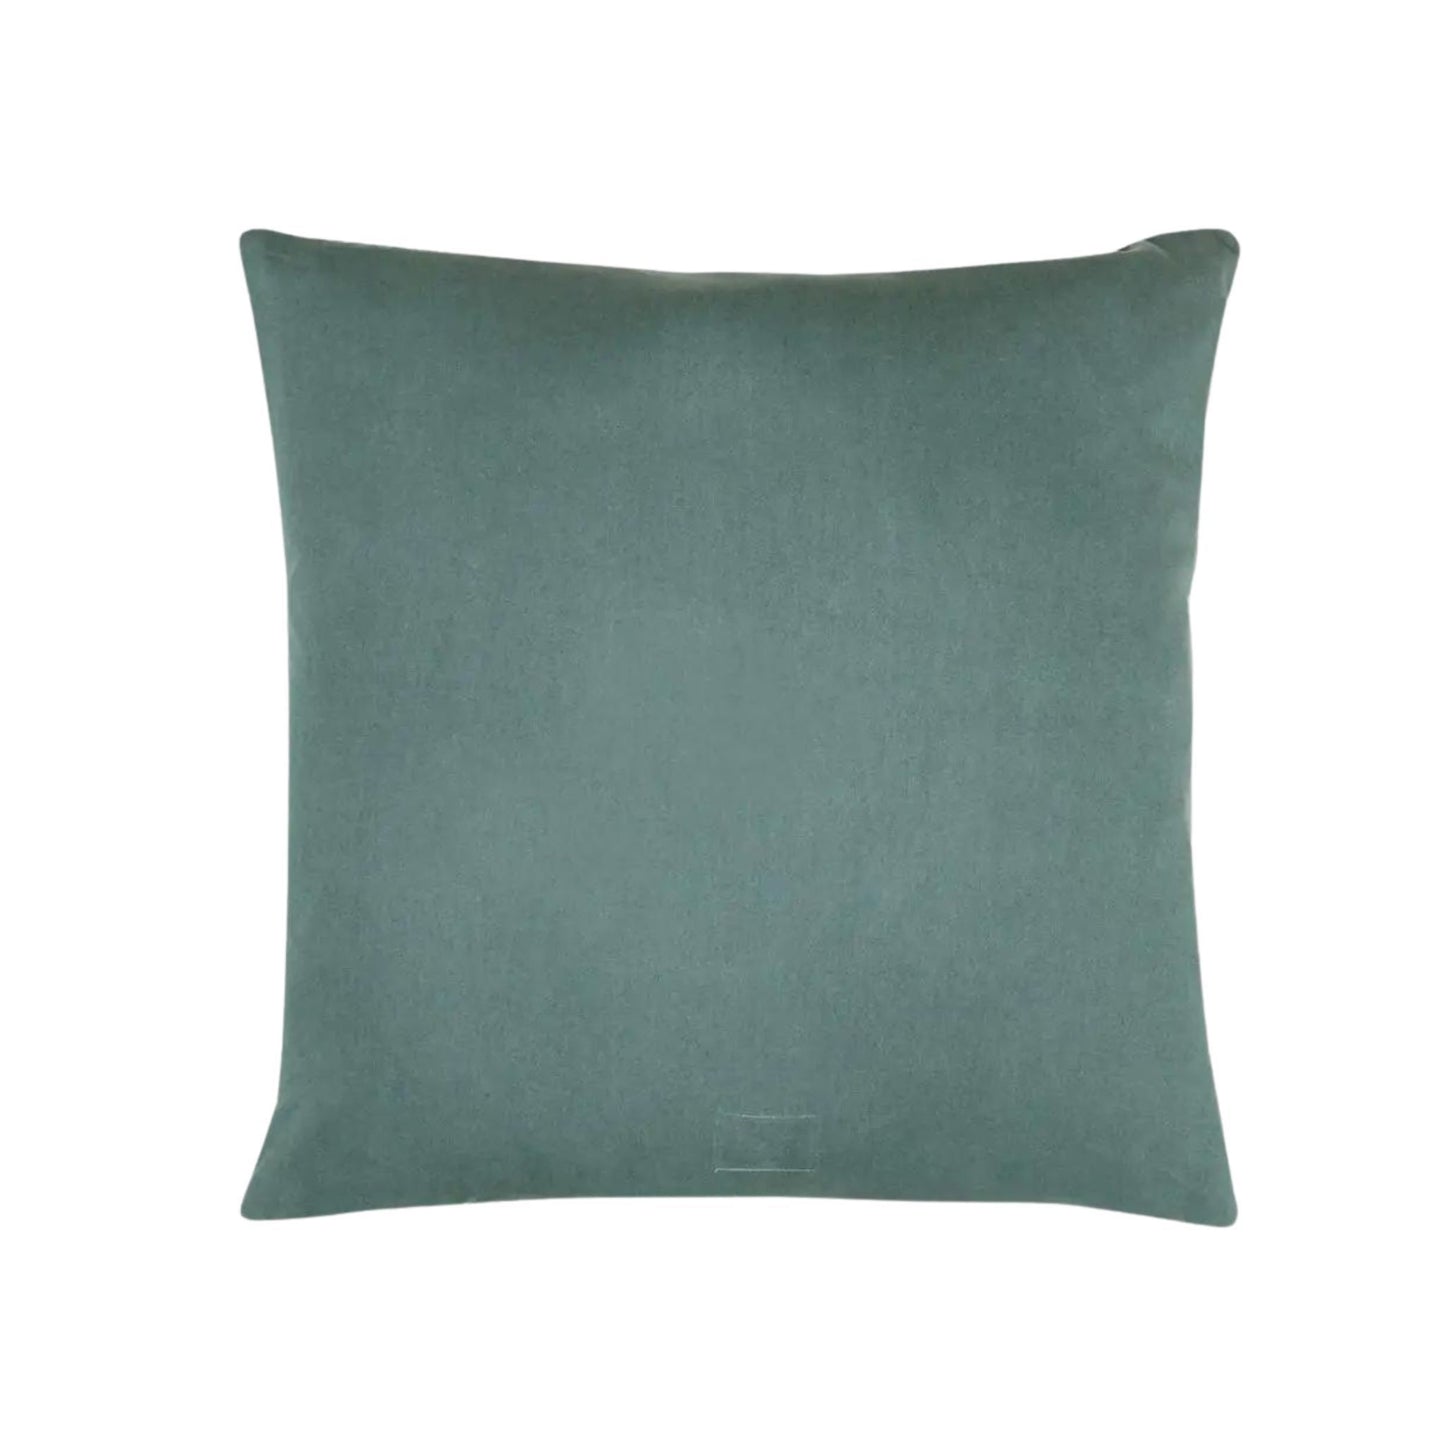 Cross Stitch Organic Cotton Throw Pillow - Spruce